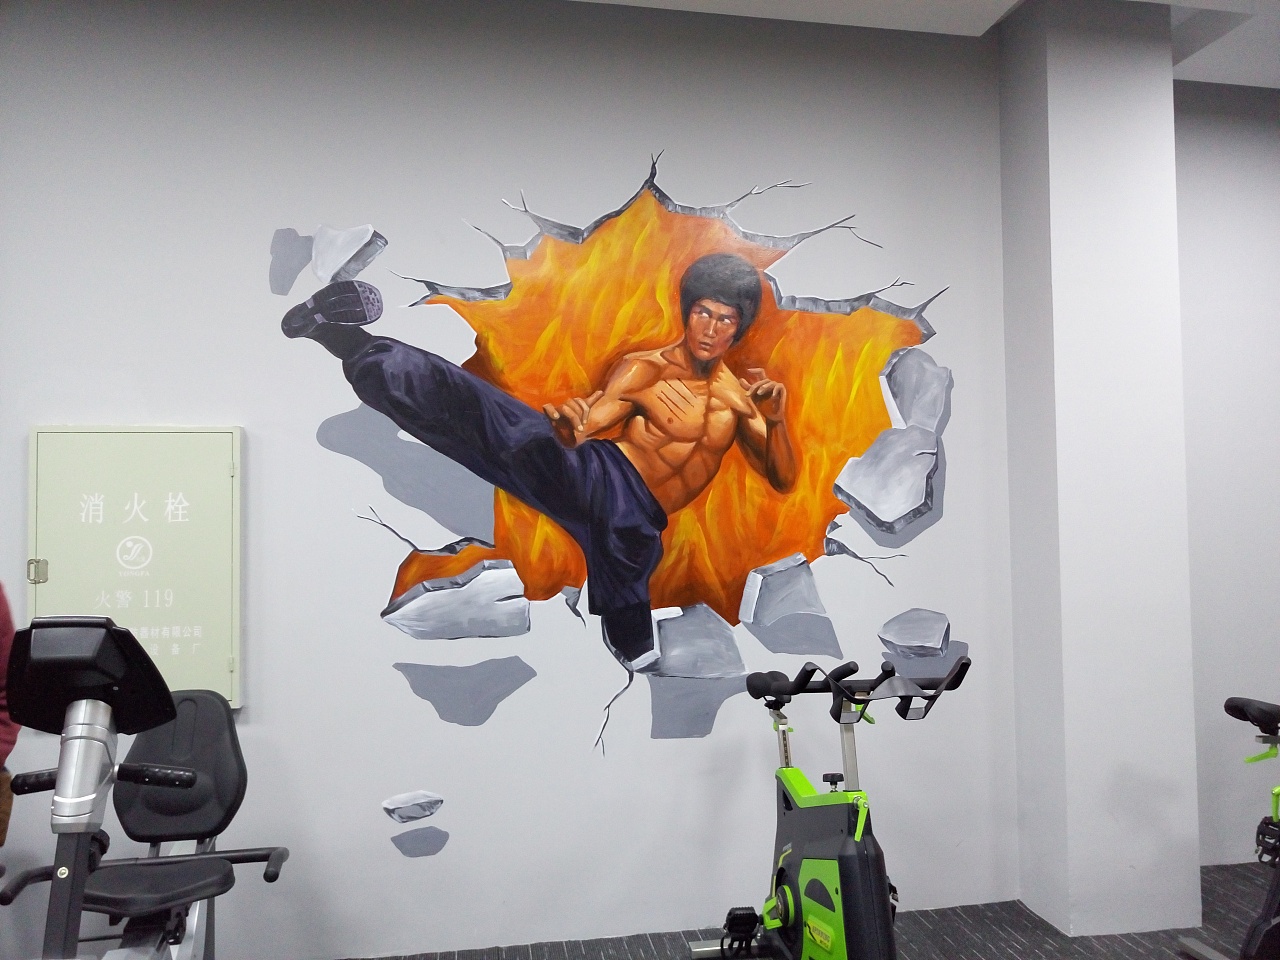 健身房涂鸦 健身房墙绘 健身馆壁画 健身馆彩绘-广州壹家艺术有限公司